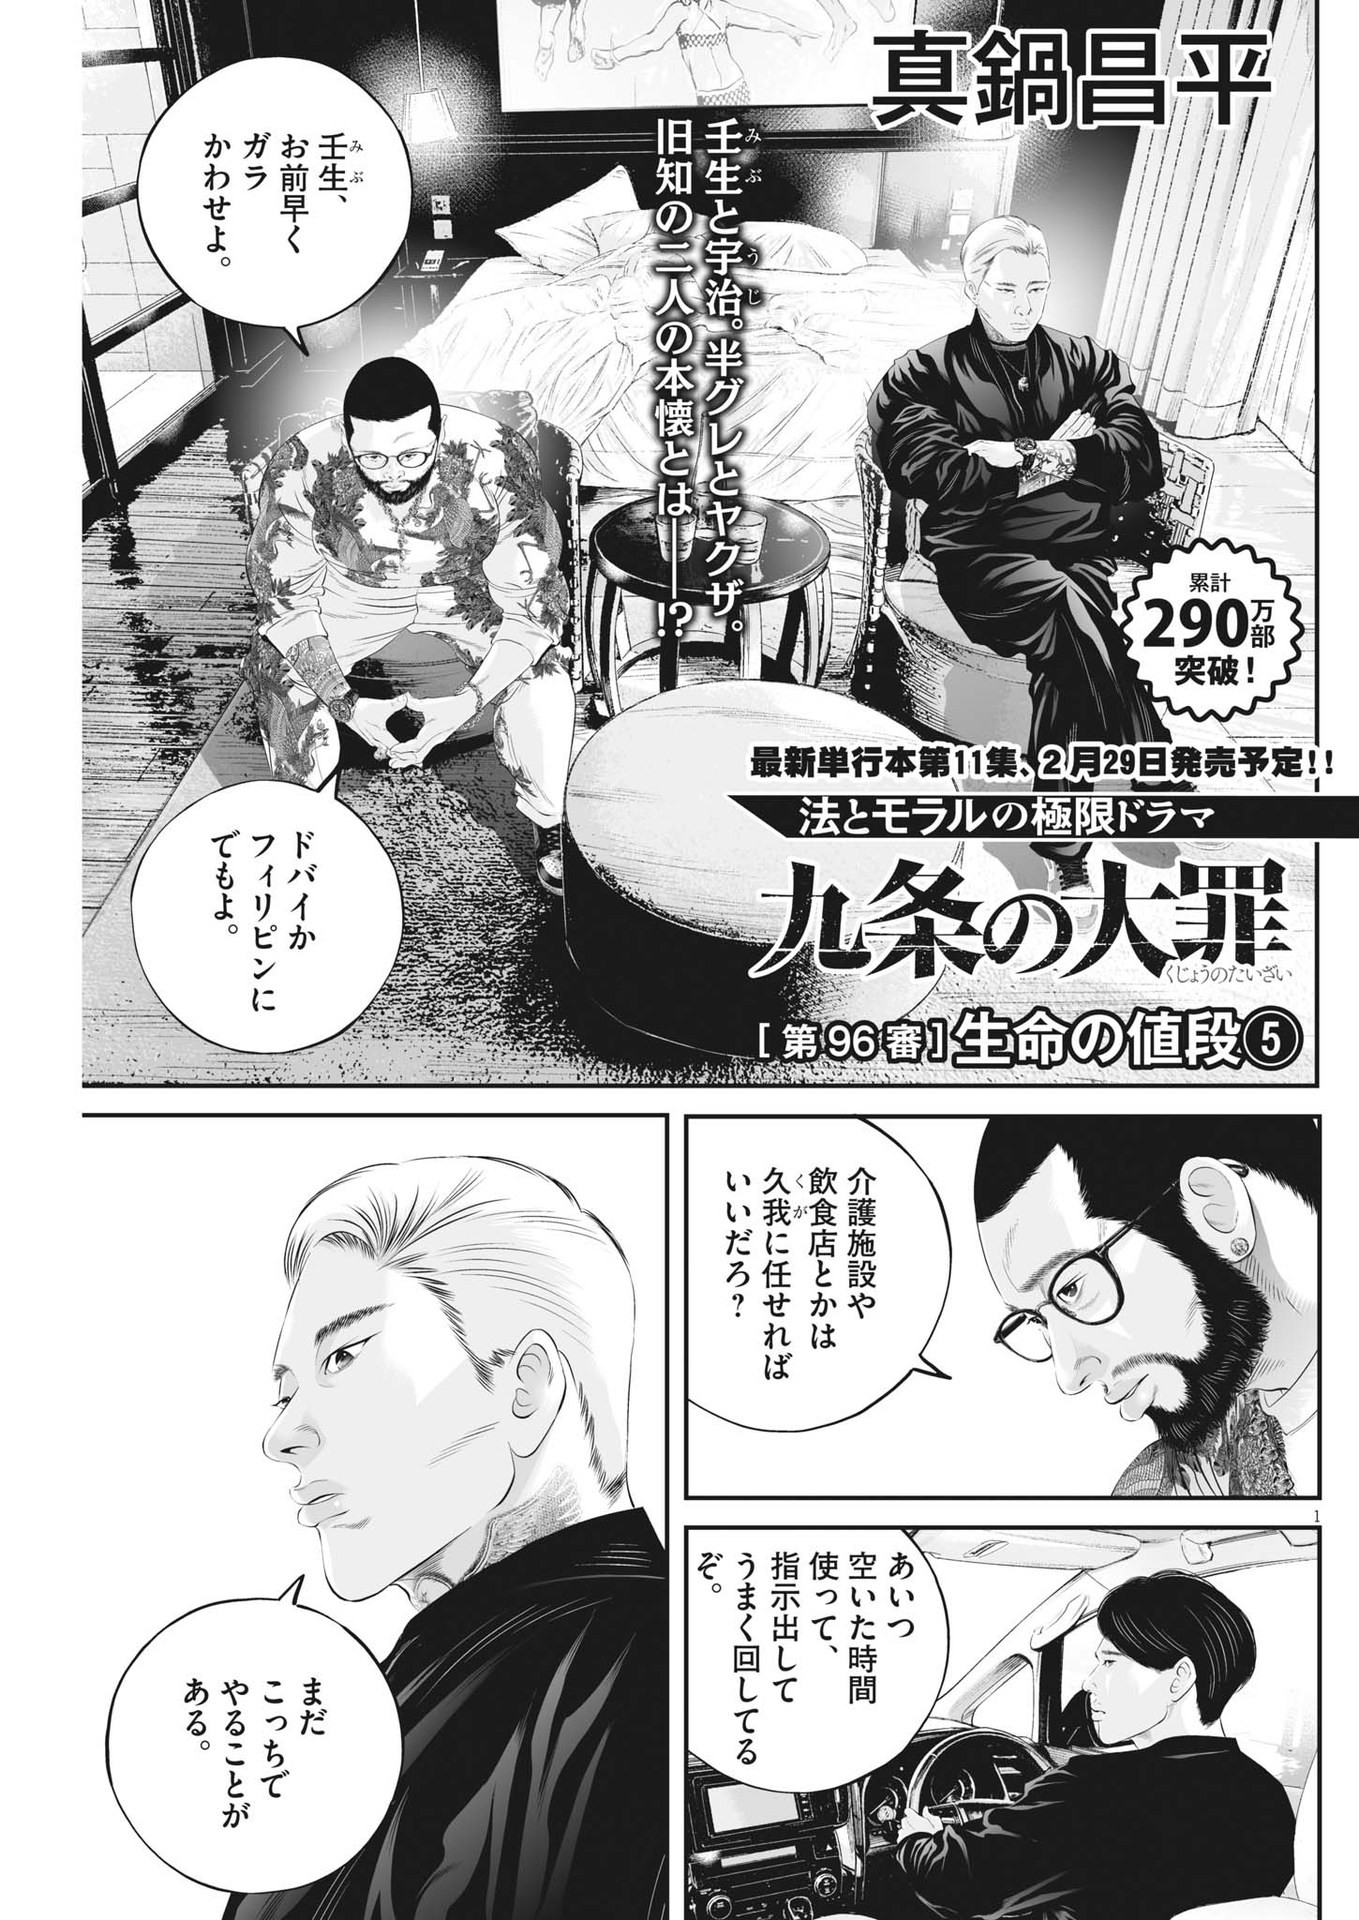 Kujou no Taizai - Chapter 96 - Page 1